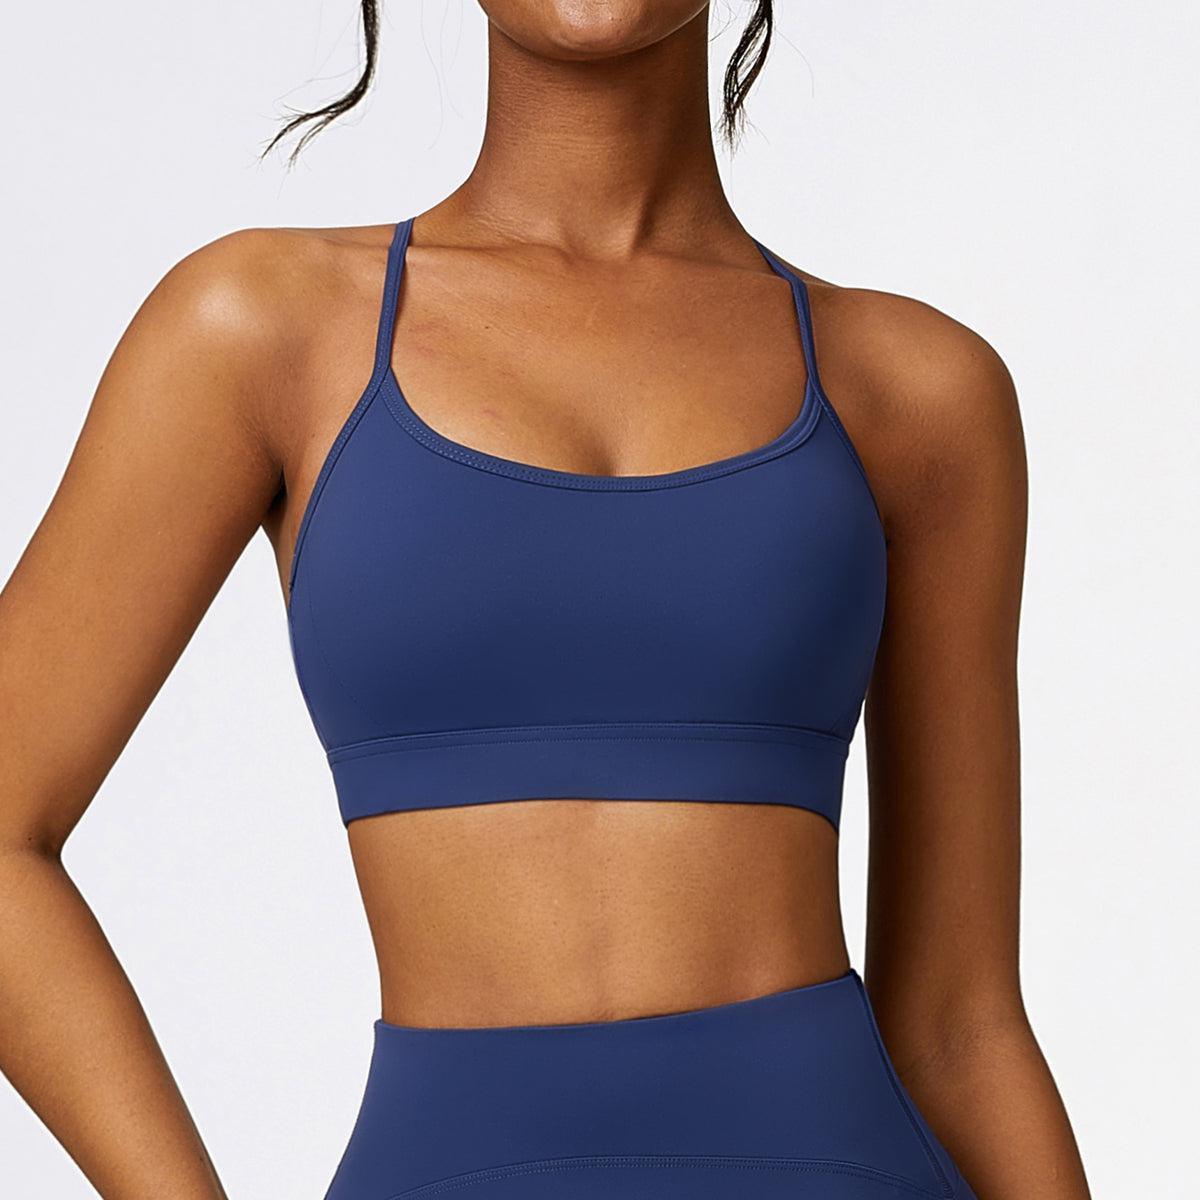 a woman in a blue sports bra top